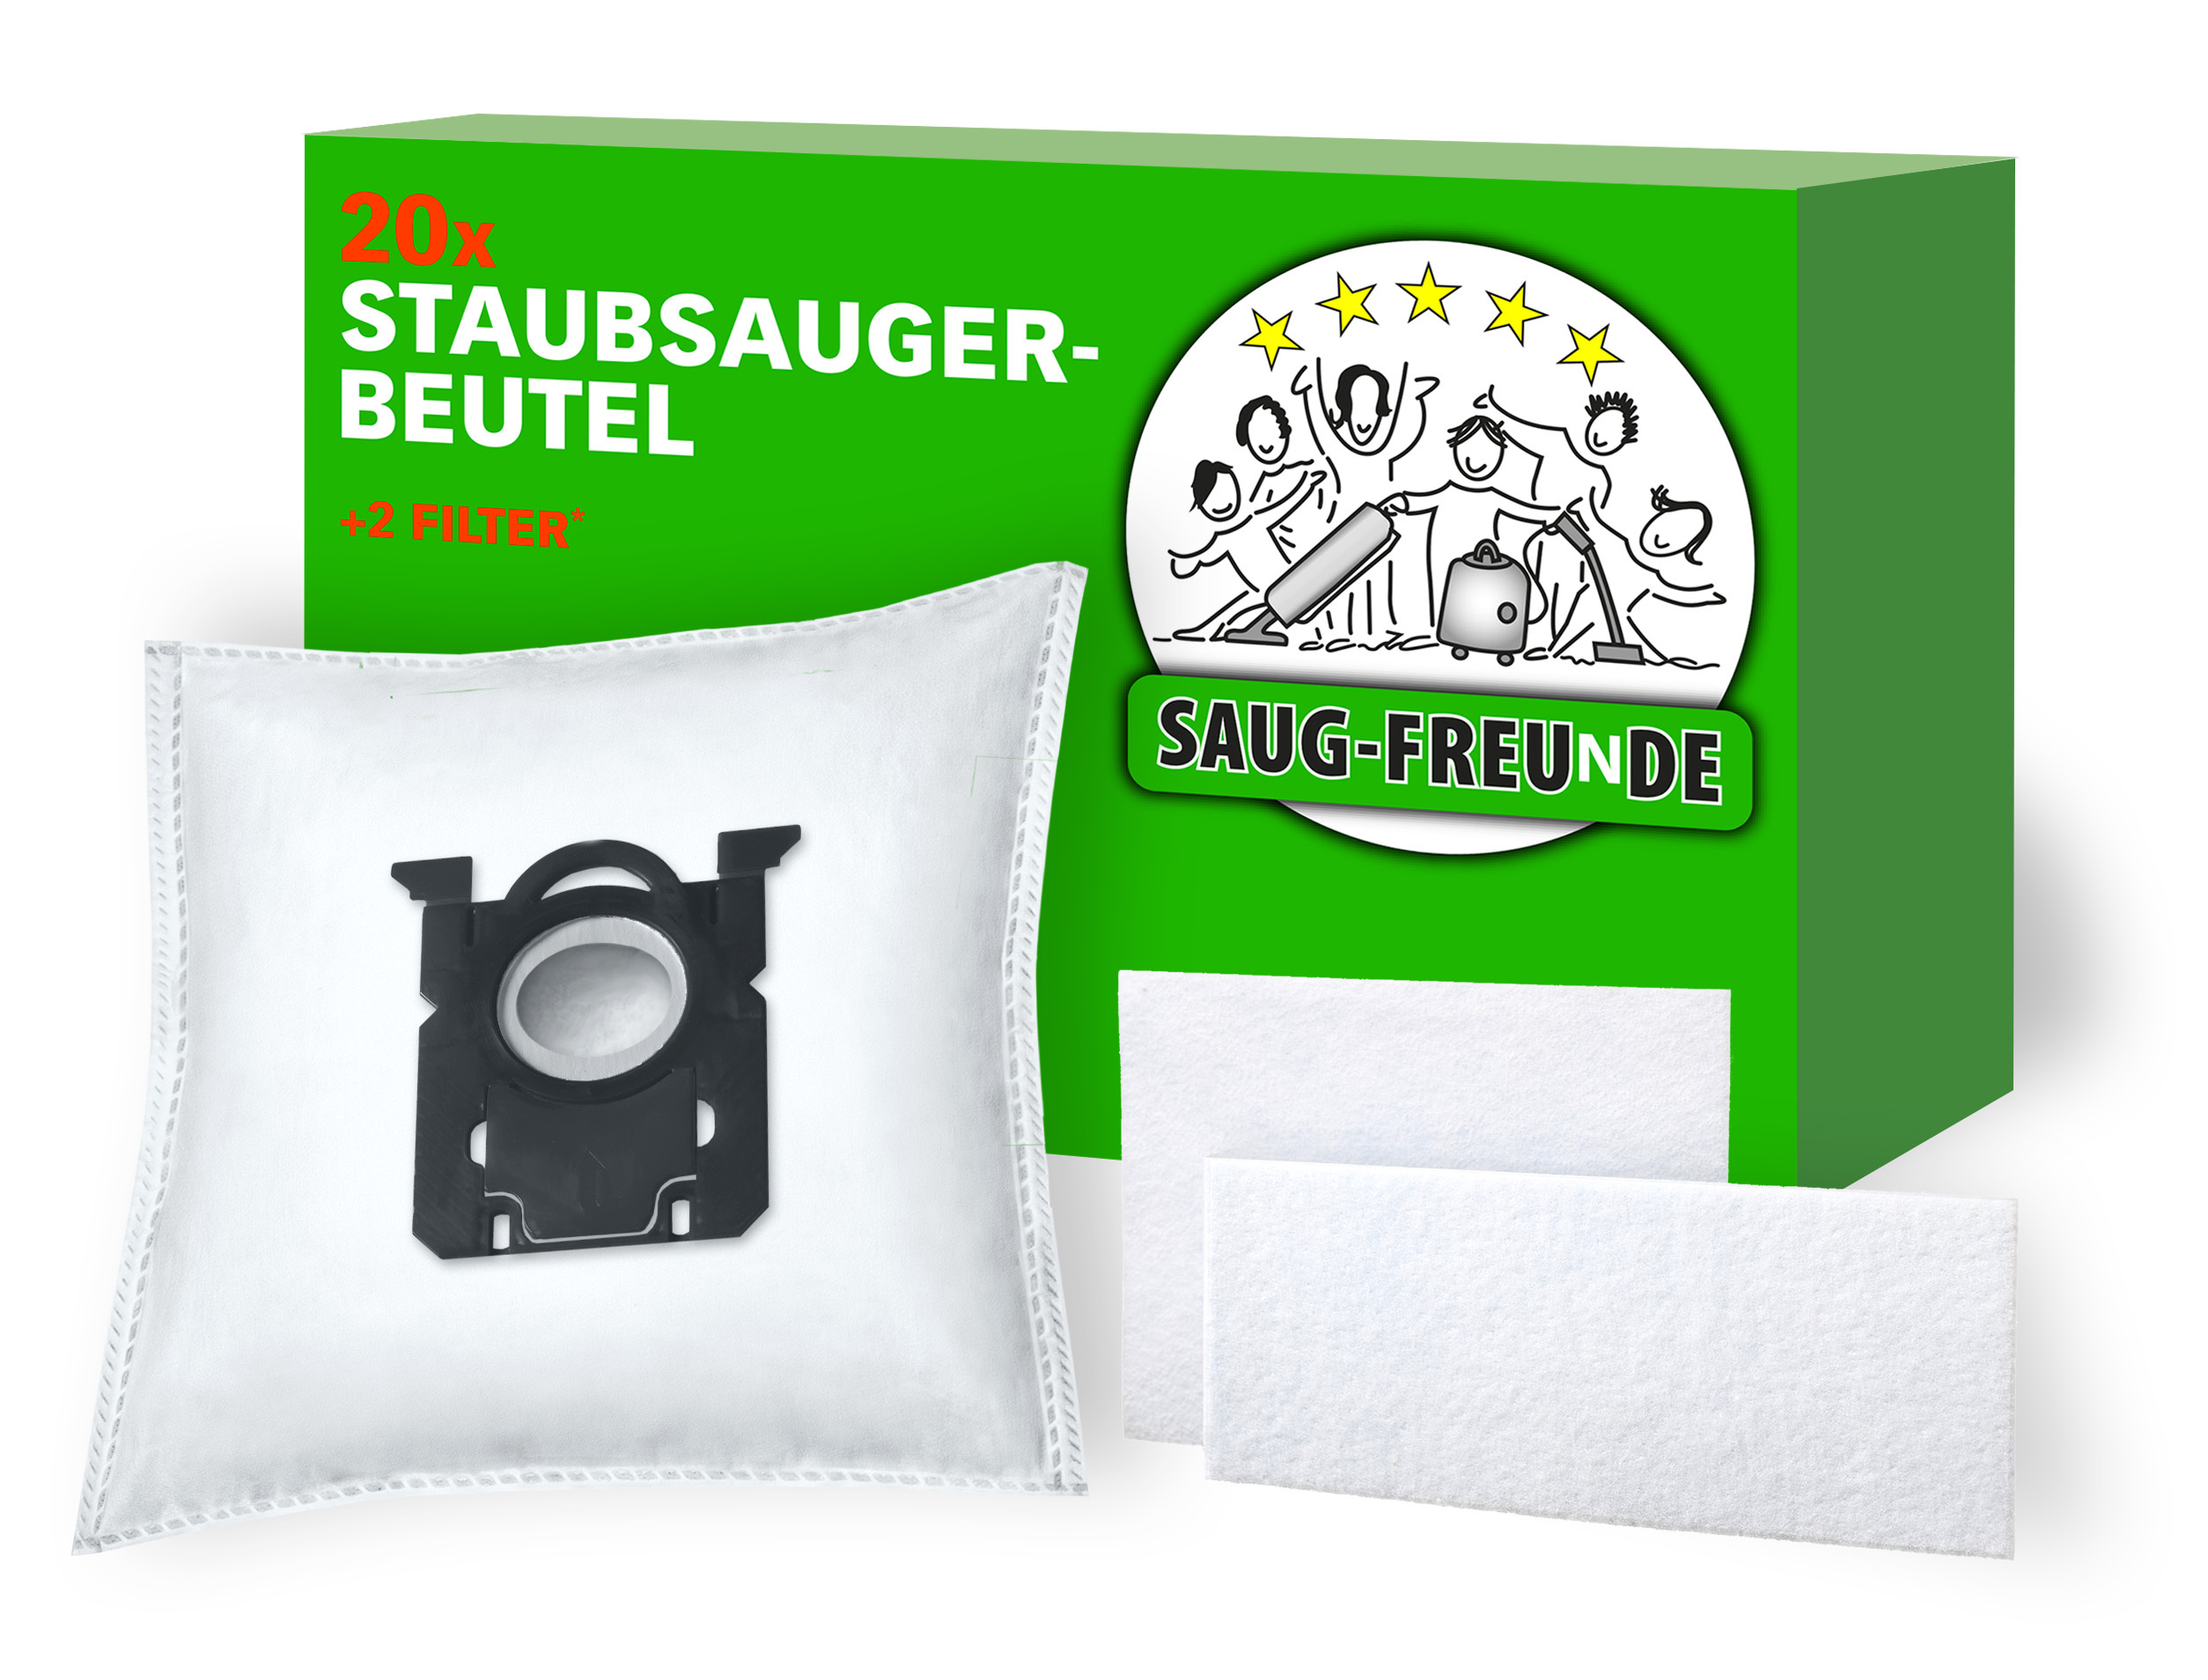 10x SAUG-FREUNDE Staubsauger-Beutel